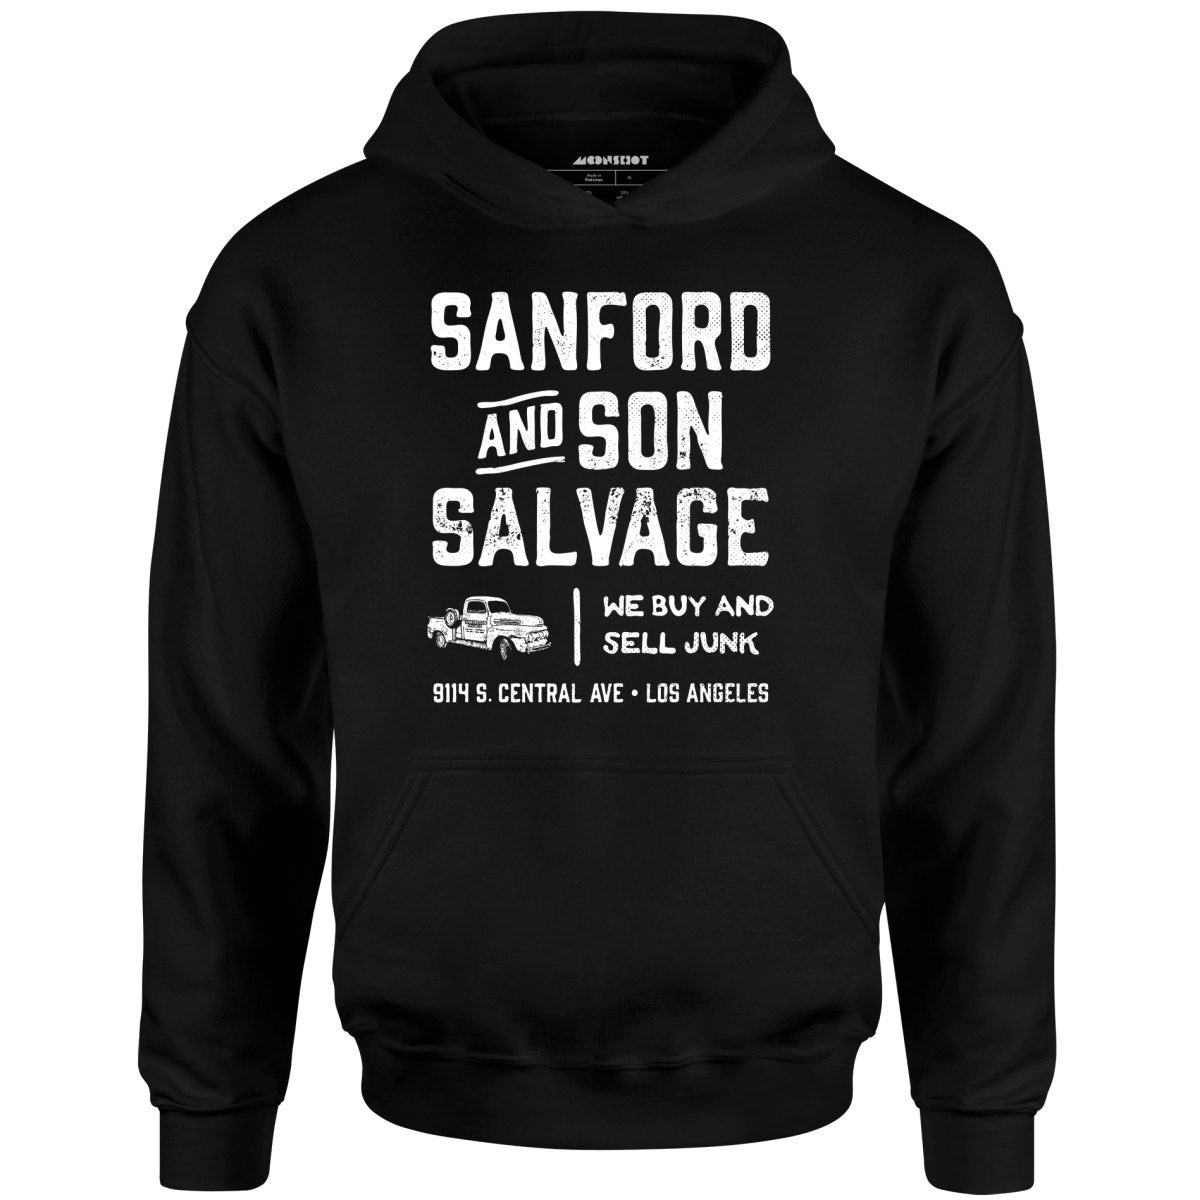 Sanford and Son Salvage - Unisex Hoodie